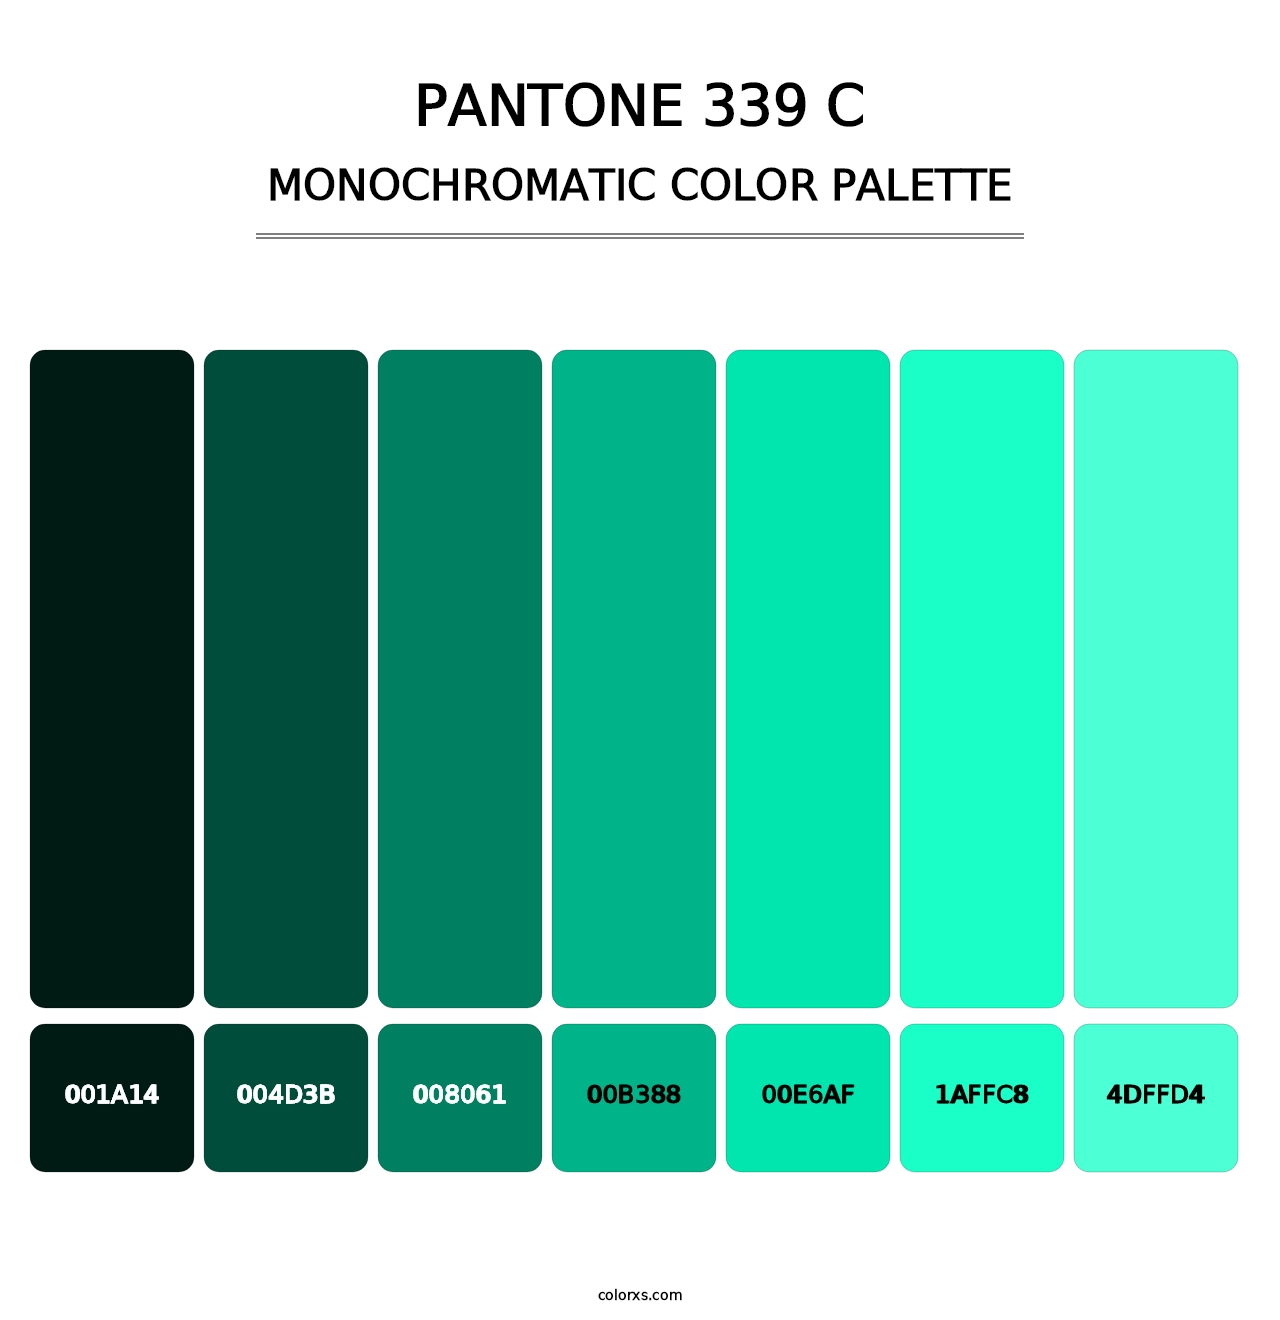 PANTONE 339 C - Monochromatic Color Palette